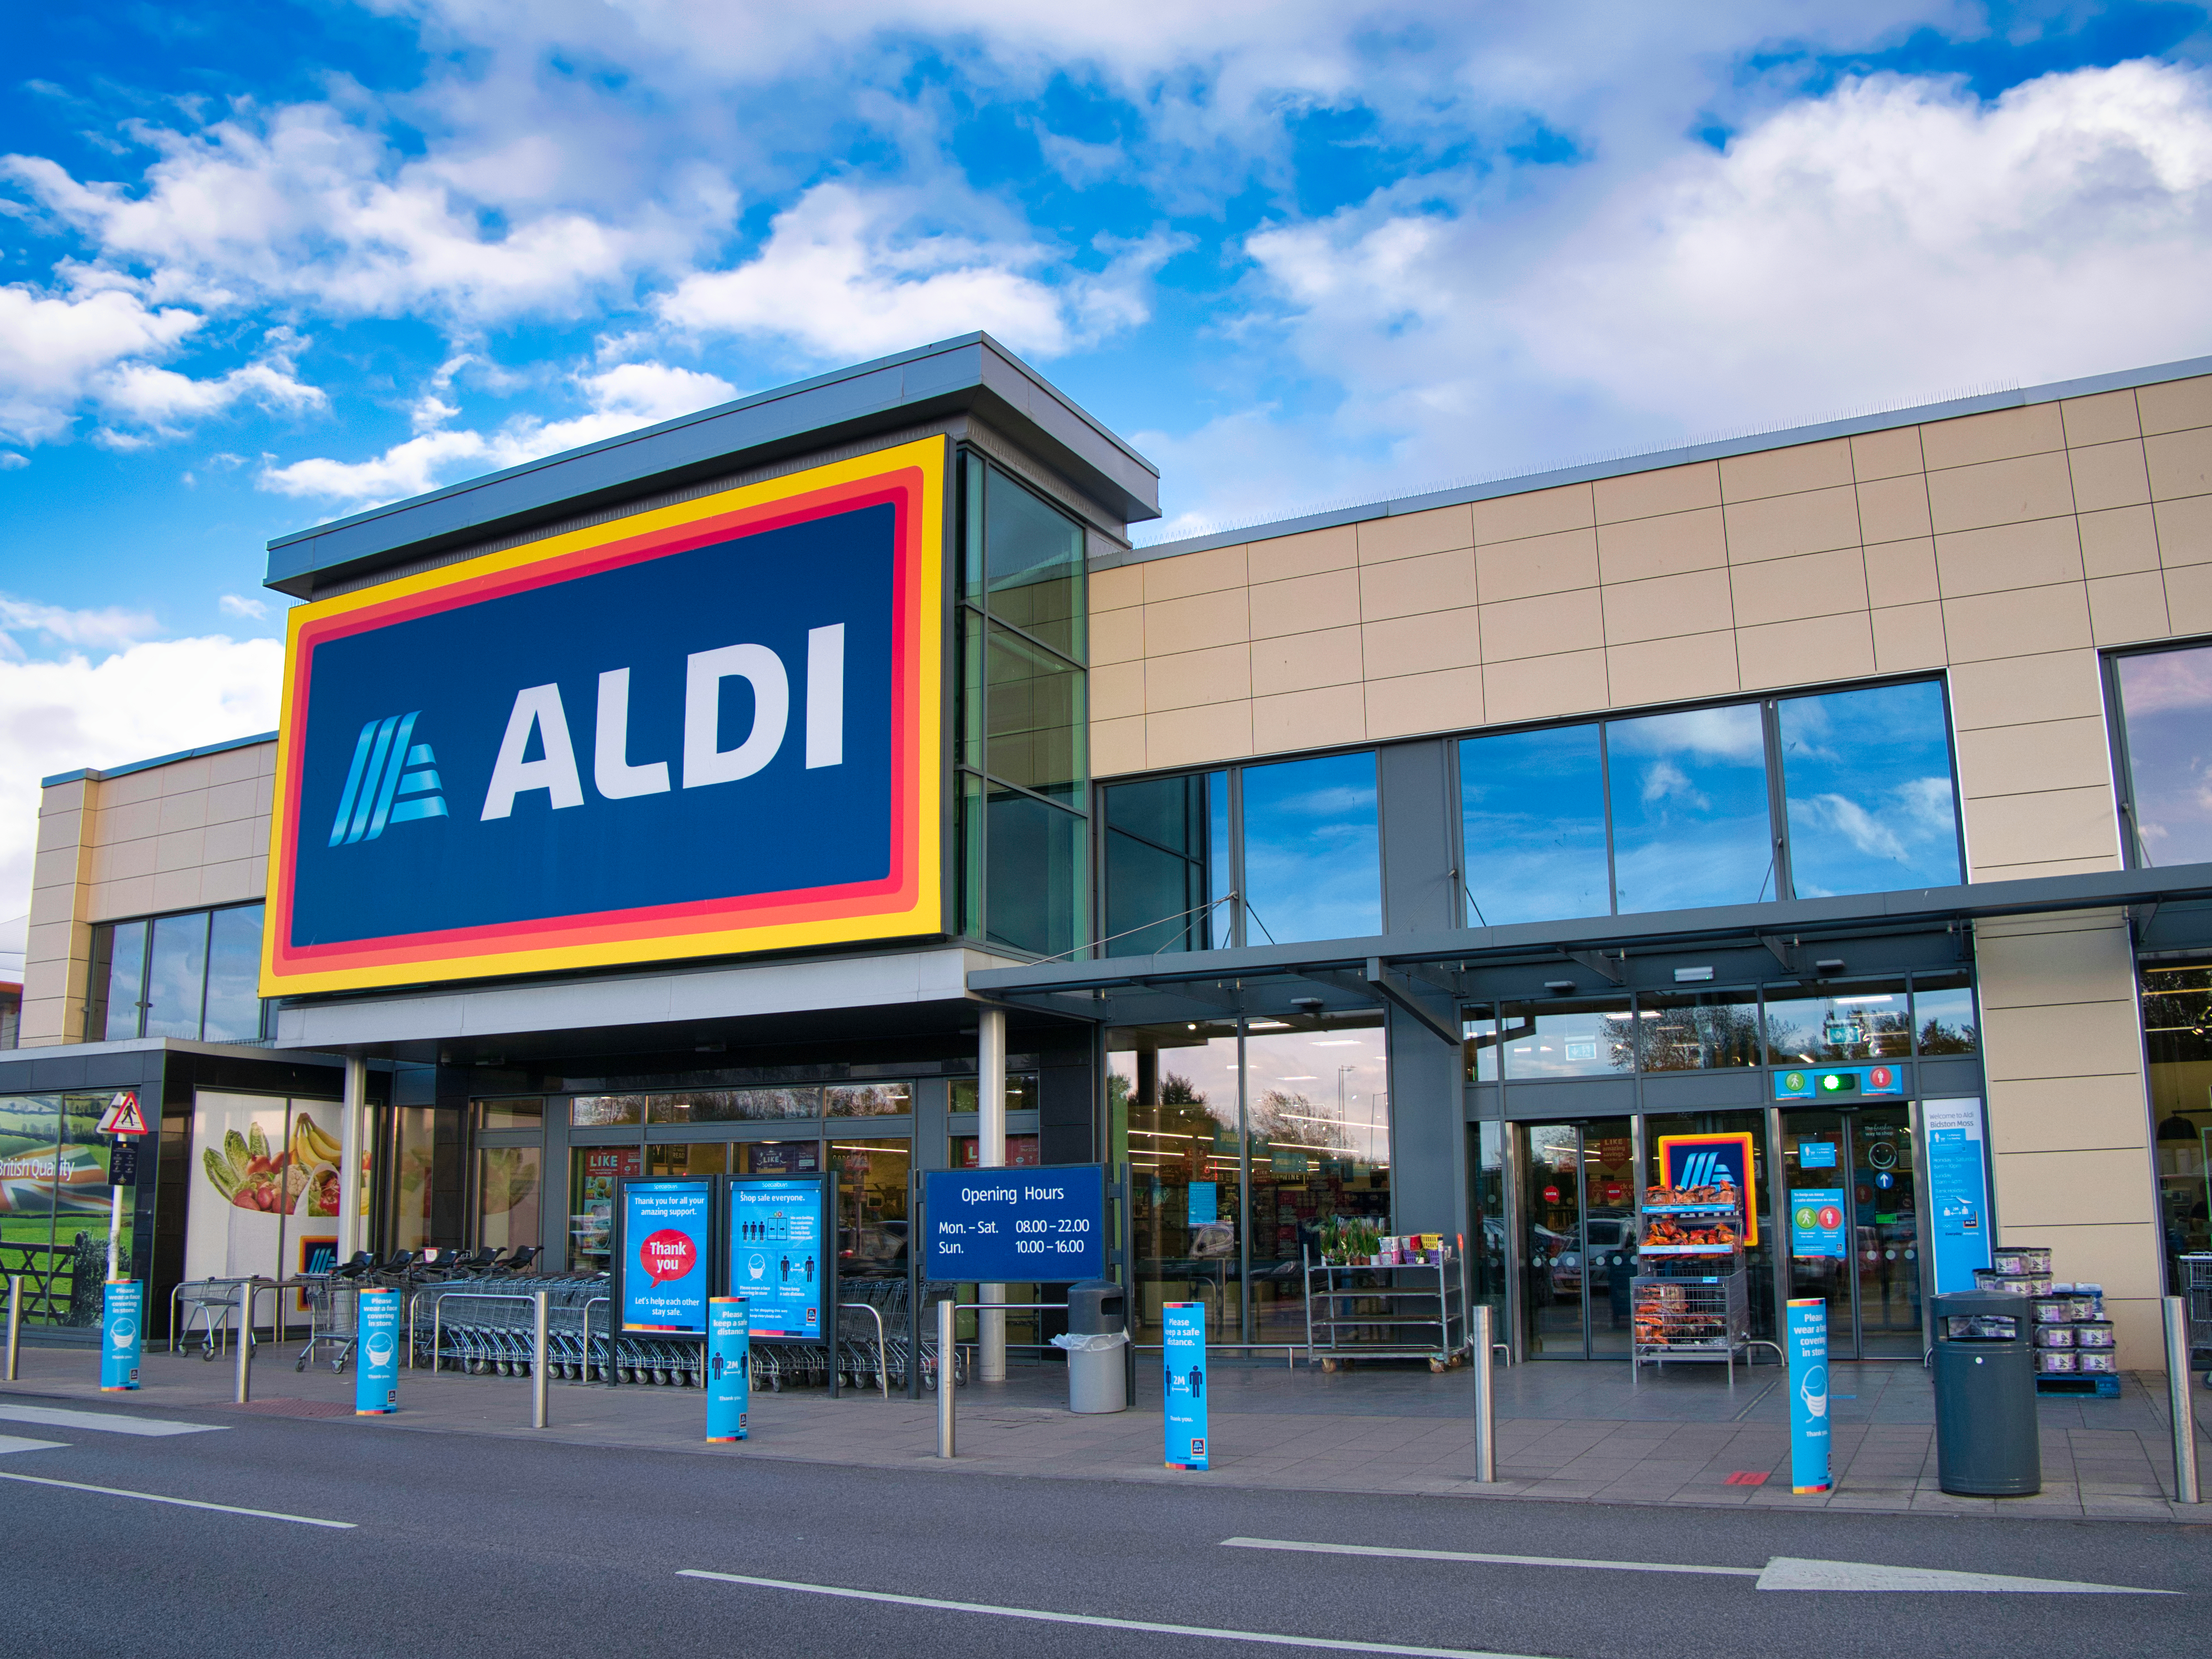 Der deutsche Discounter Aldi verkauft viele Produkte, darunter auch Wärmflaschen